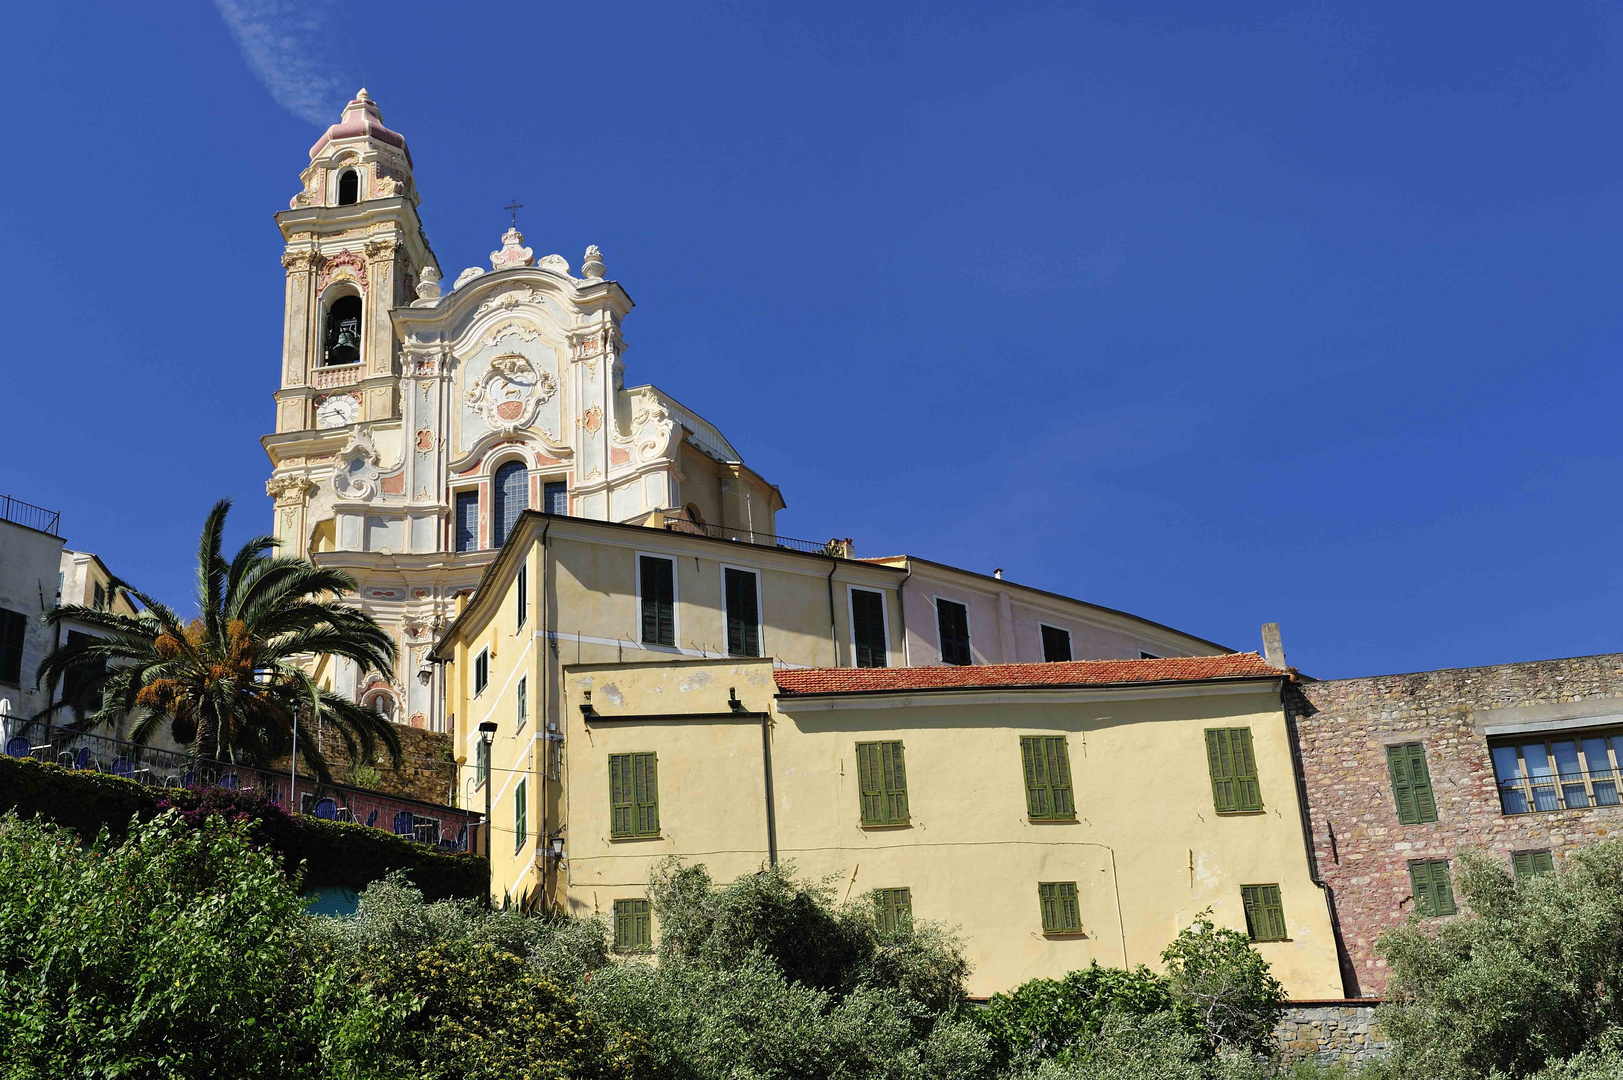 Glanzpunkt in Cervo ist die Barockfassade der Kirche San Giovanni Battista